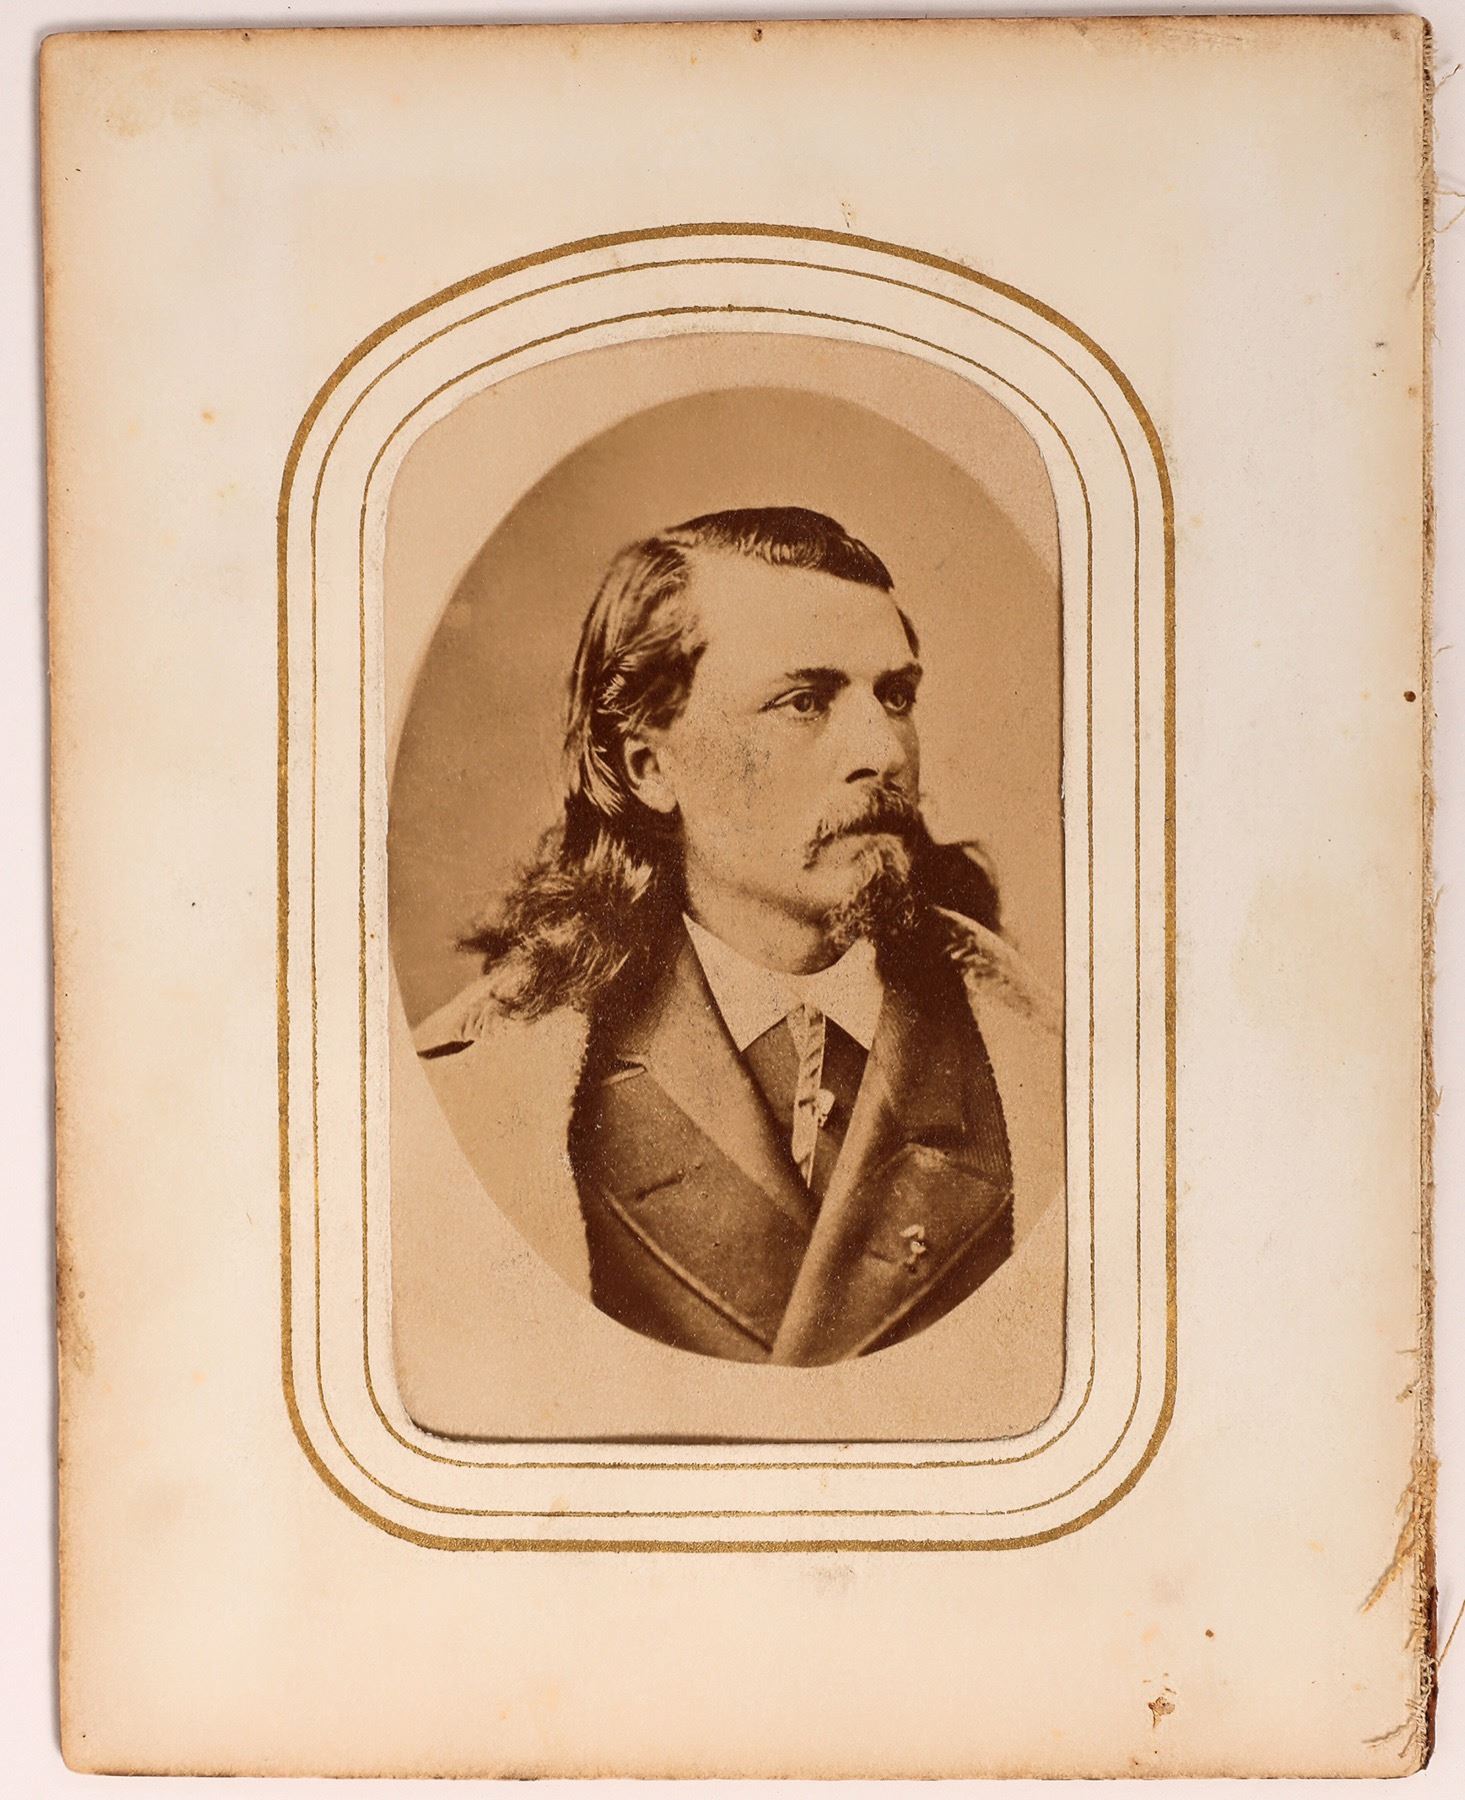 Circa-1870s carte de visite photograph of Buffalo Bill Cody, est. $20,000-$50,000